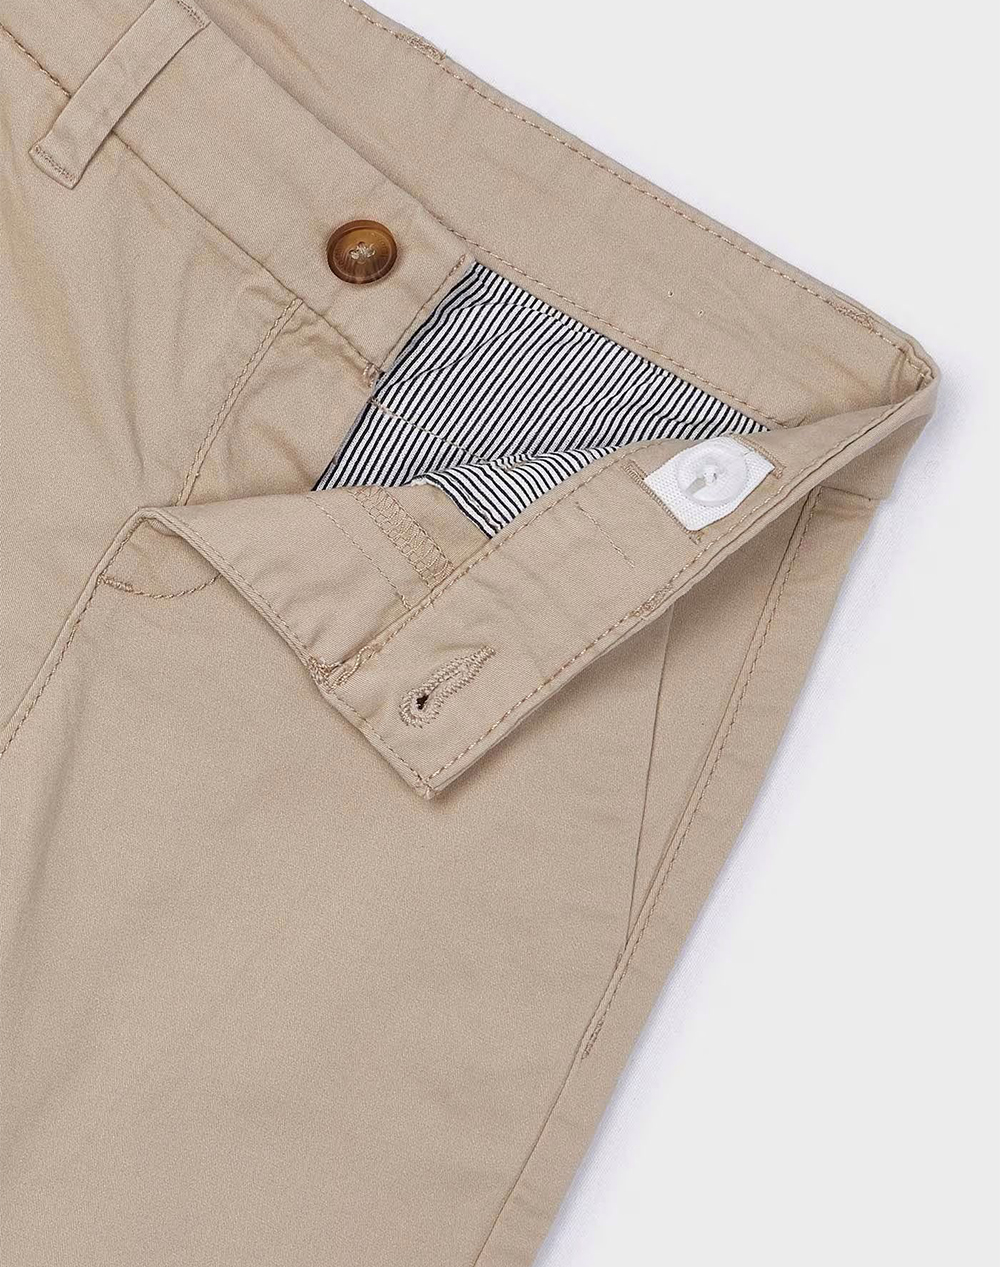 MAYORAL Slanted pocket trousers basic caparitone